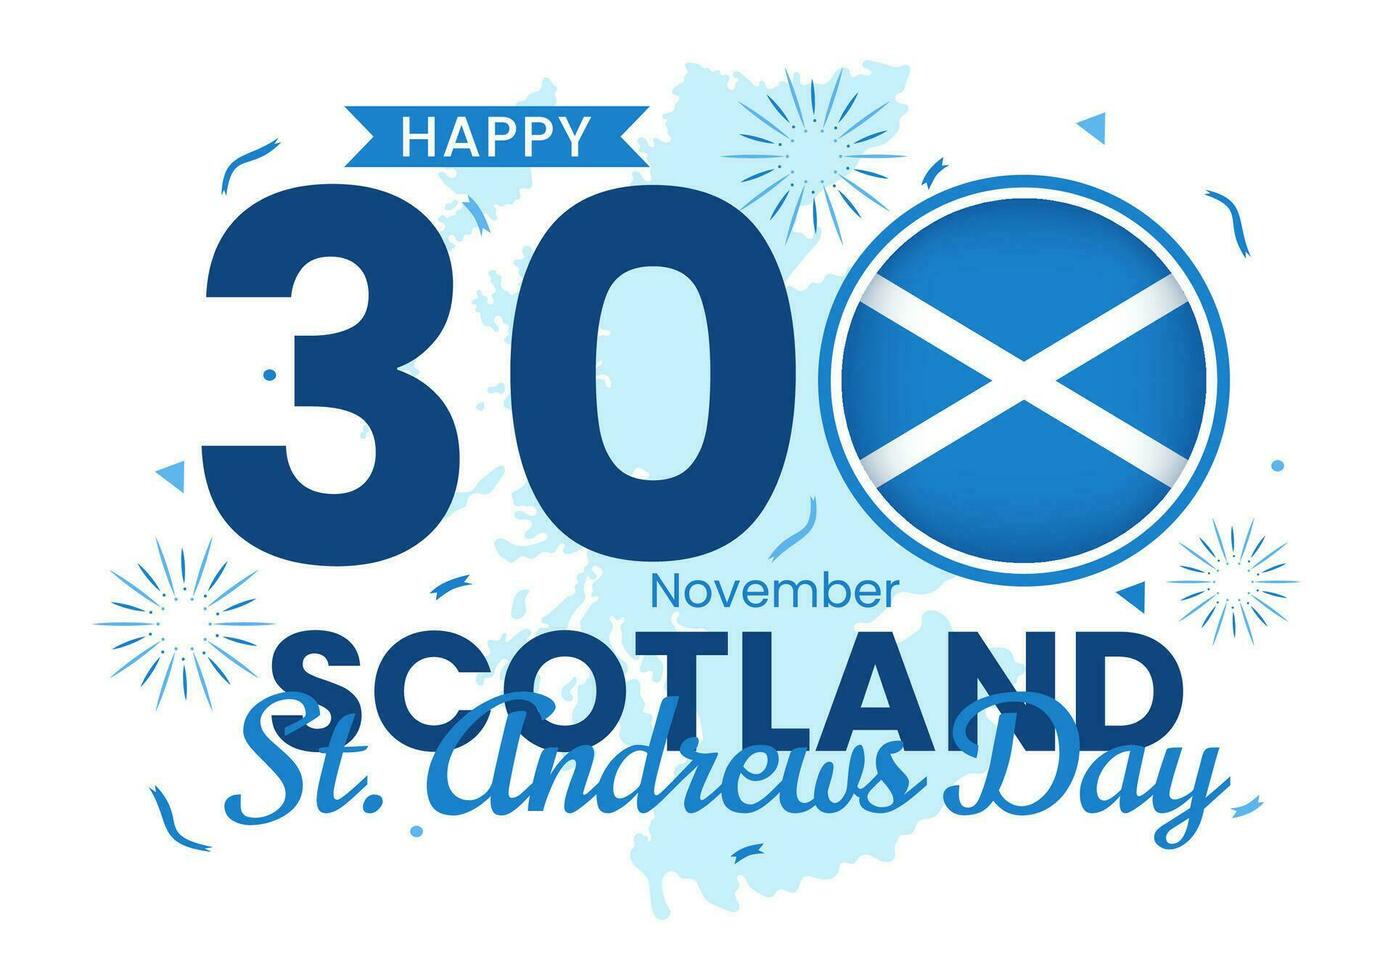 content st Andrew journée vecteur illustration sur 30 novembre avec Écosse drapeau dans nationale vacances fête plat dessin animé bleu Contexte conception